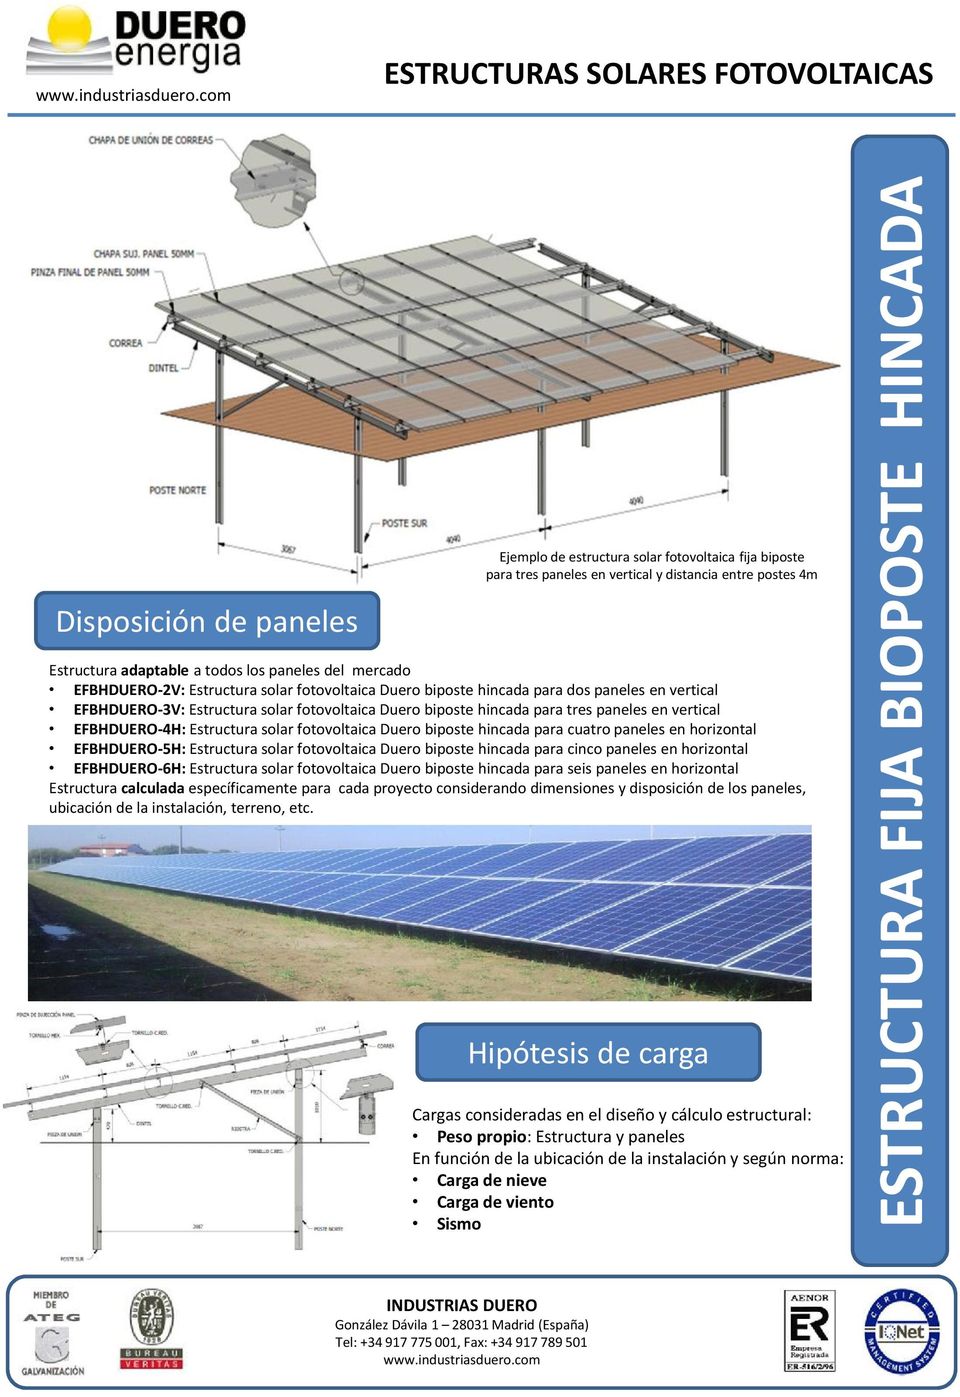 EFBHDUERO-4H: Estructura solar fotovoltaica Duero biposte hincada para cuatro paneles en horizontal EFBHDUERO-5H: Estructura solar fotovoltaica Duero biposte hincada para cinco paneles en horizontal